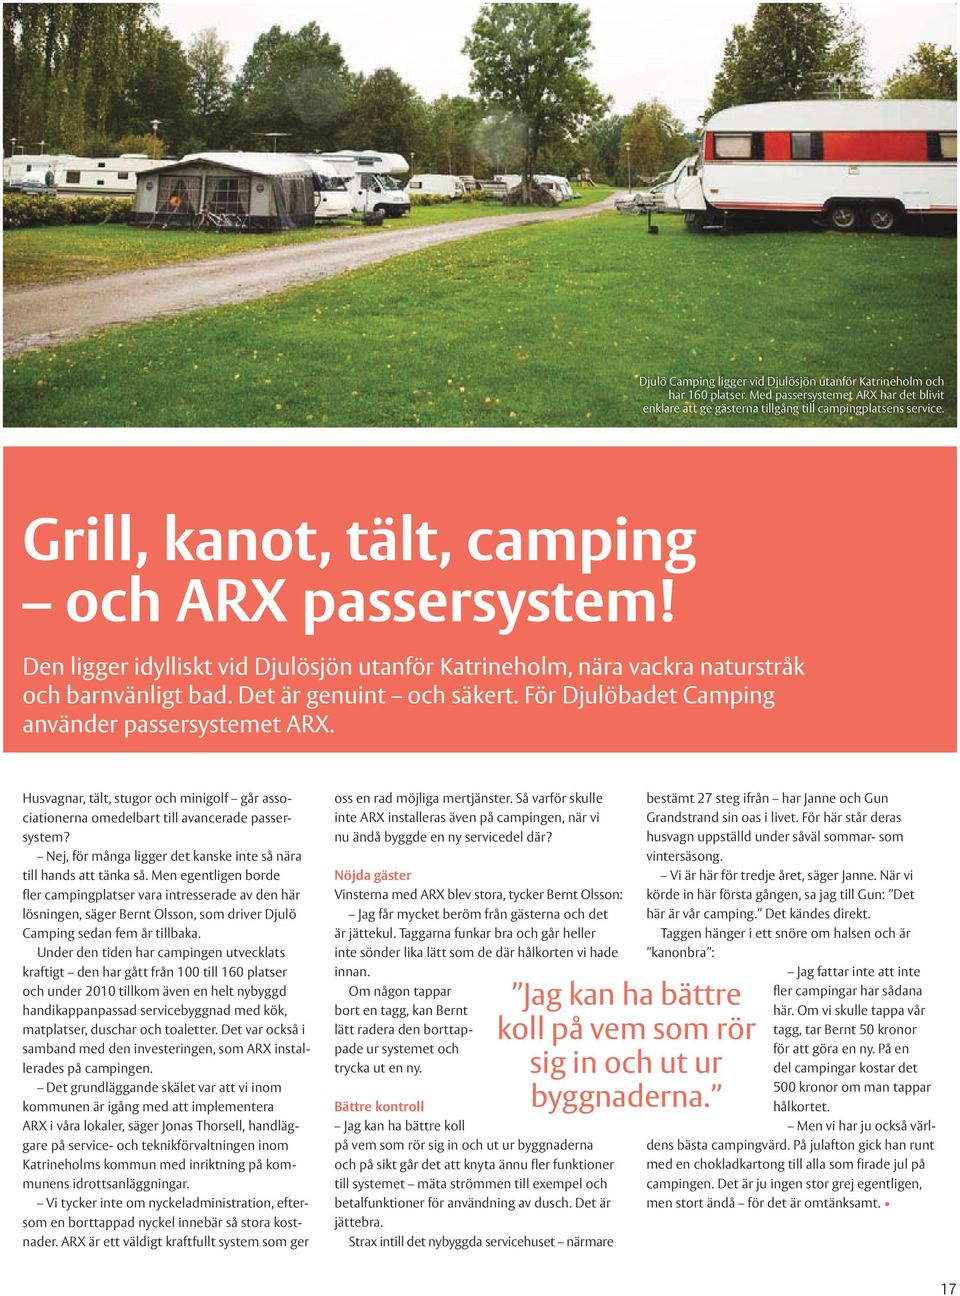 För Djulöbadet Camping använder passersystemet ARX. Husvagnar, tält, stugor och minigolf går associationerna omedelbart till avancerade passersystem?